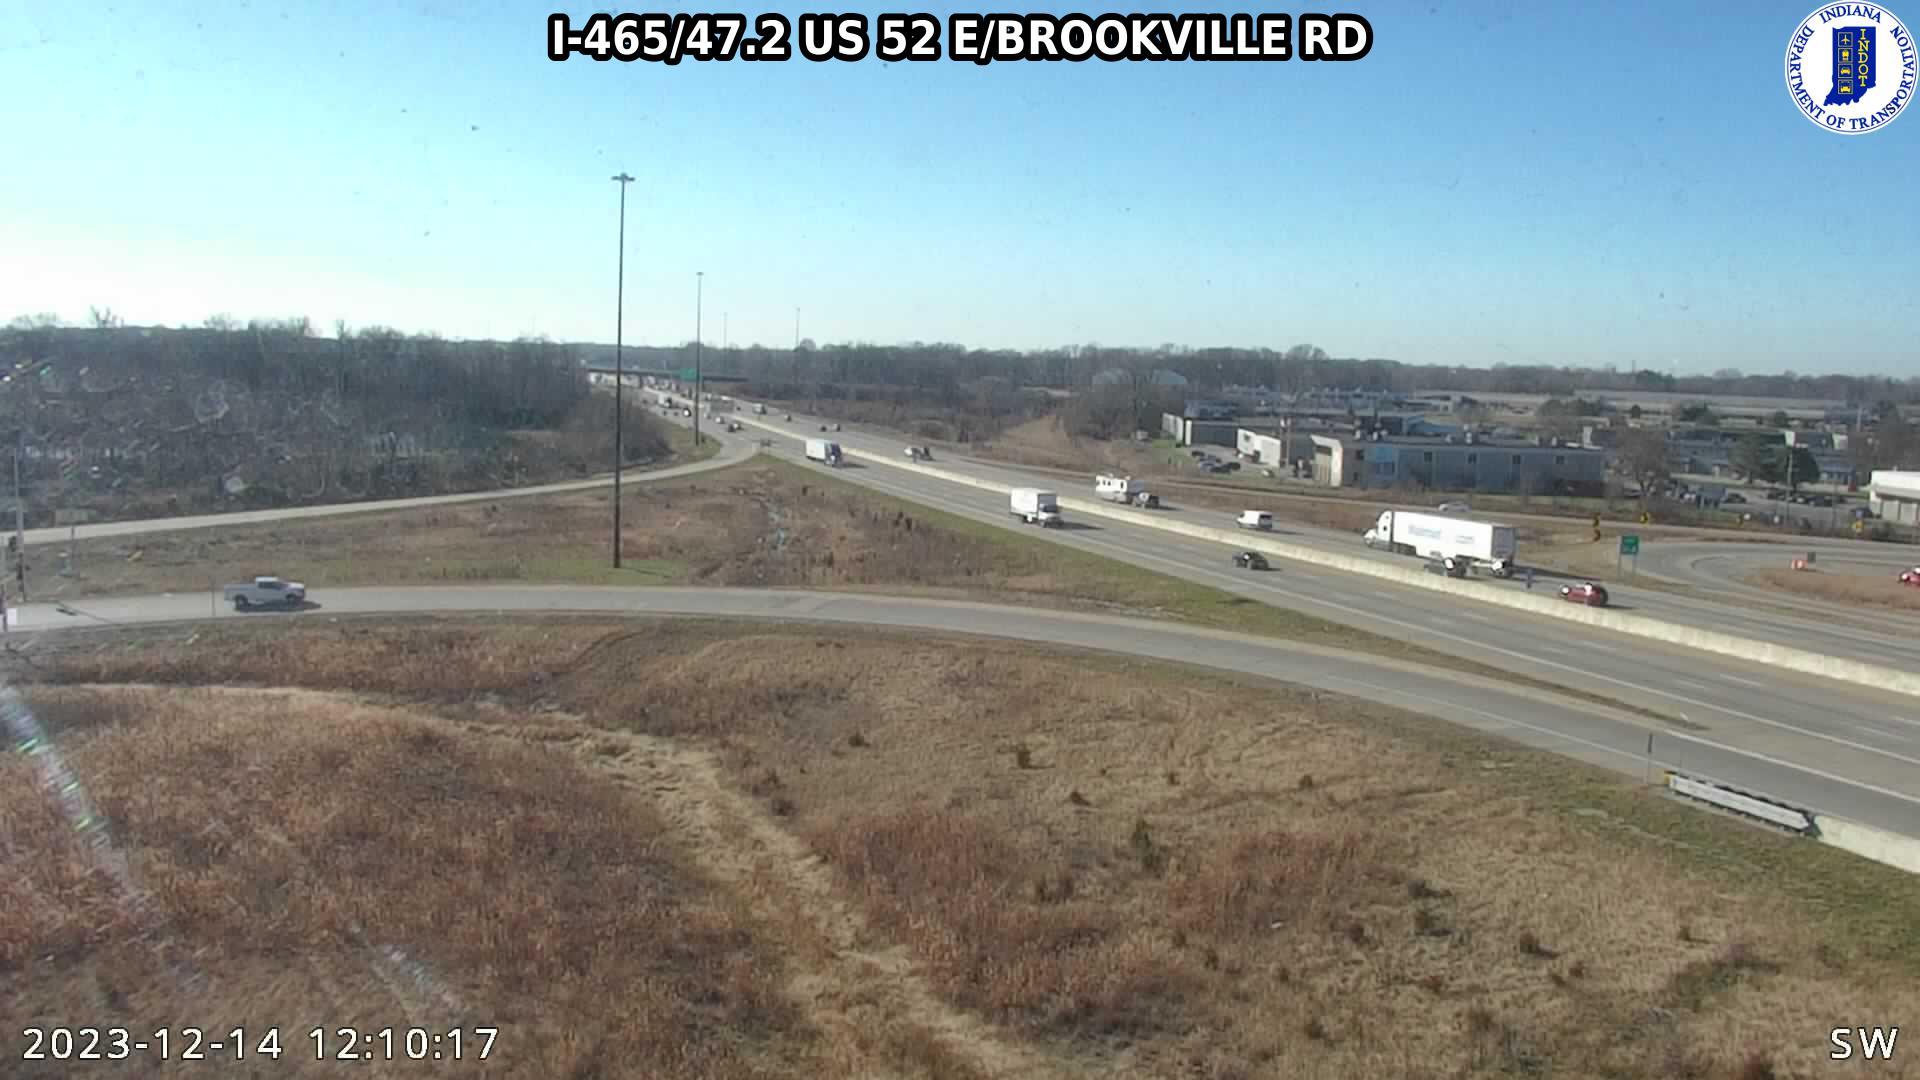 Indianapolis: I-465: I-465/47.2 US 52 E/BROOKVILLE RD Traffic Camera